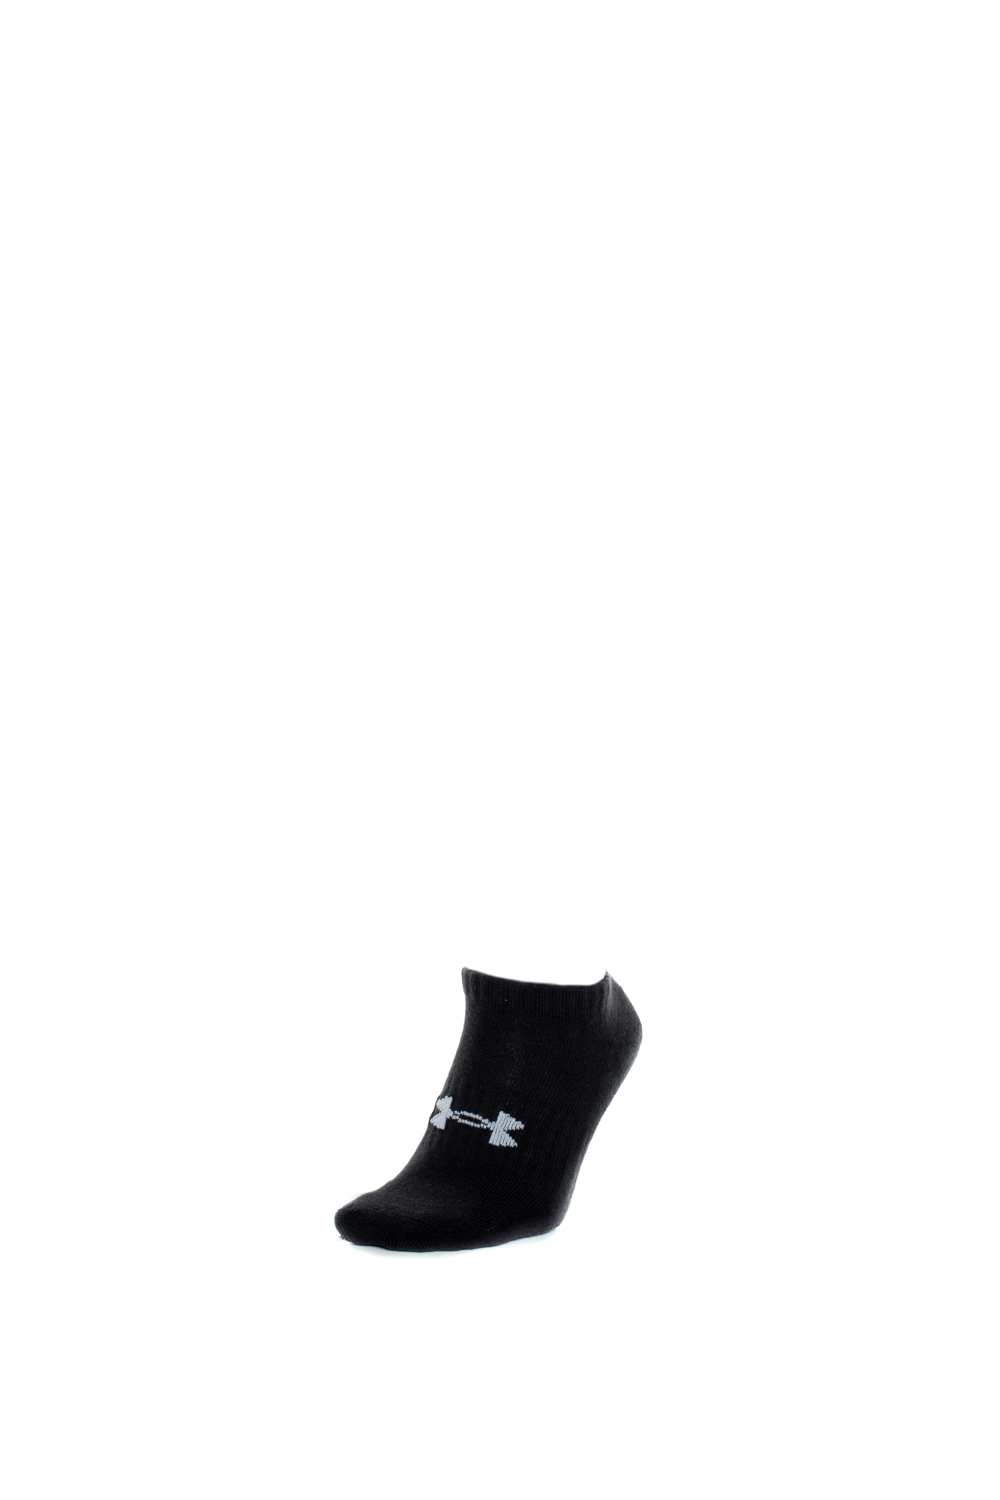 Γυναικεία/Αξεσουάρ/Κάλτσες UNDER ARMOUR - Unisex κάλτσες UNDER ARMOUR Core No Show 3Pk μαύρες